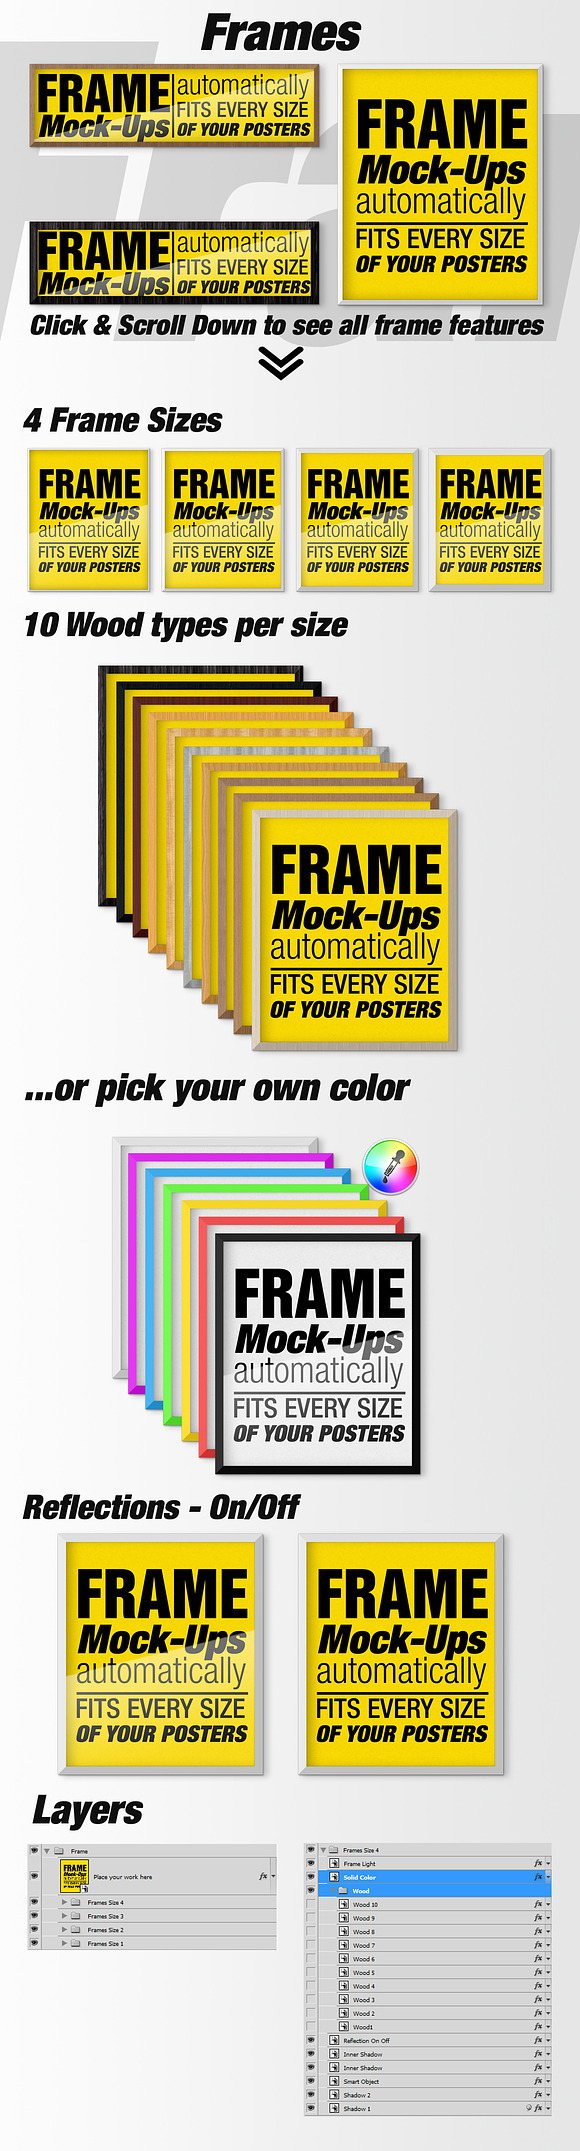 Canvas Mockups - Frames Mockups v 58 in Print Mockups - product preview 11